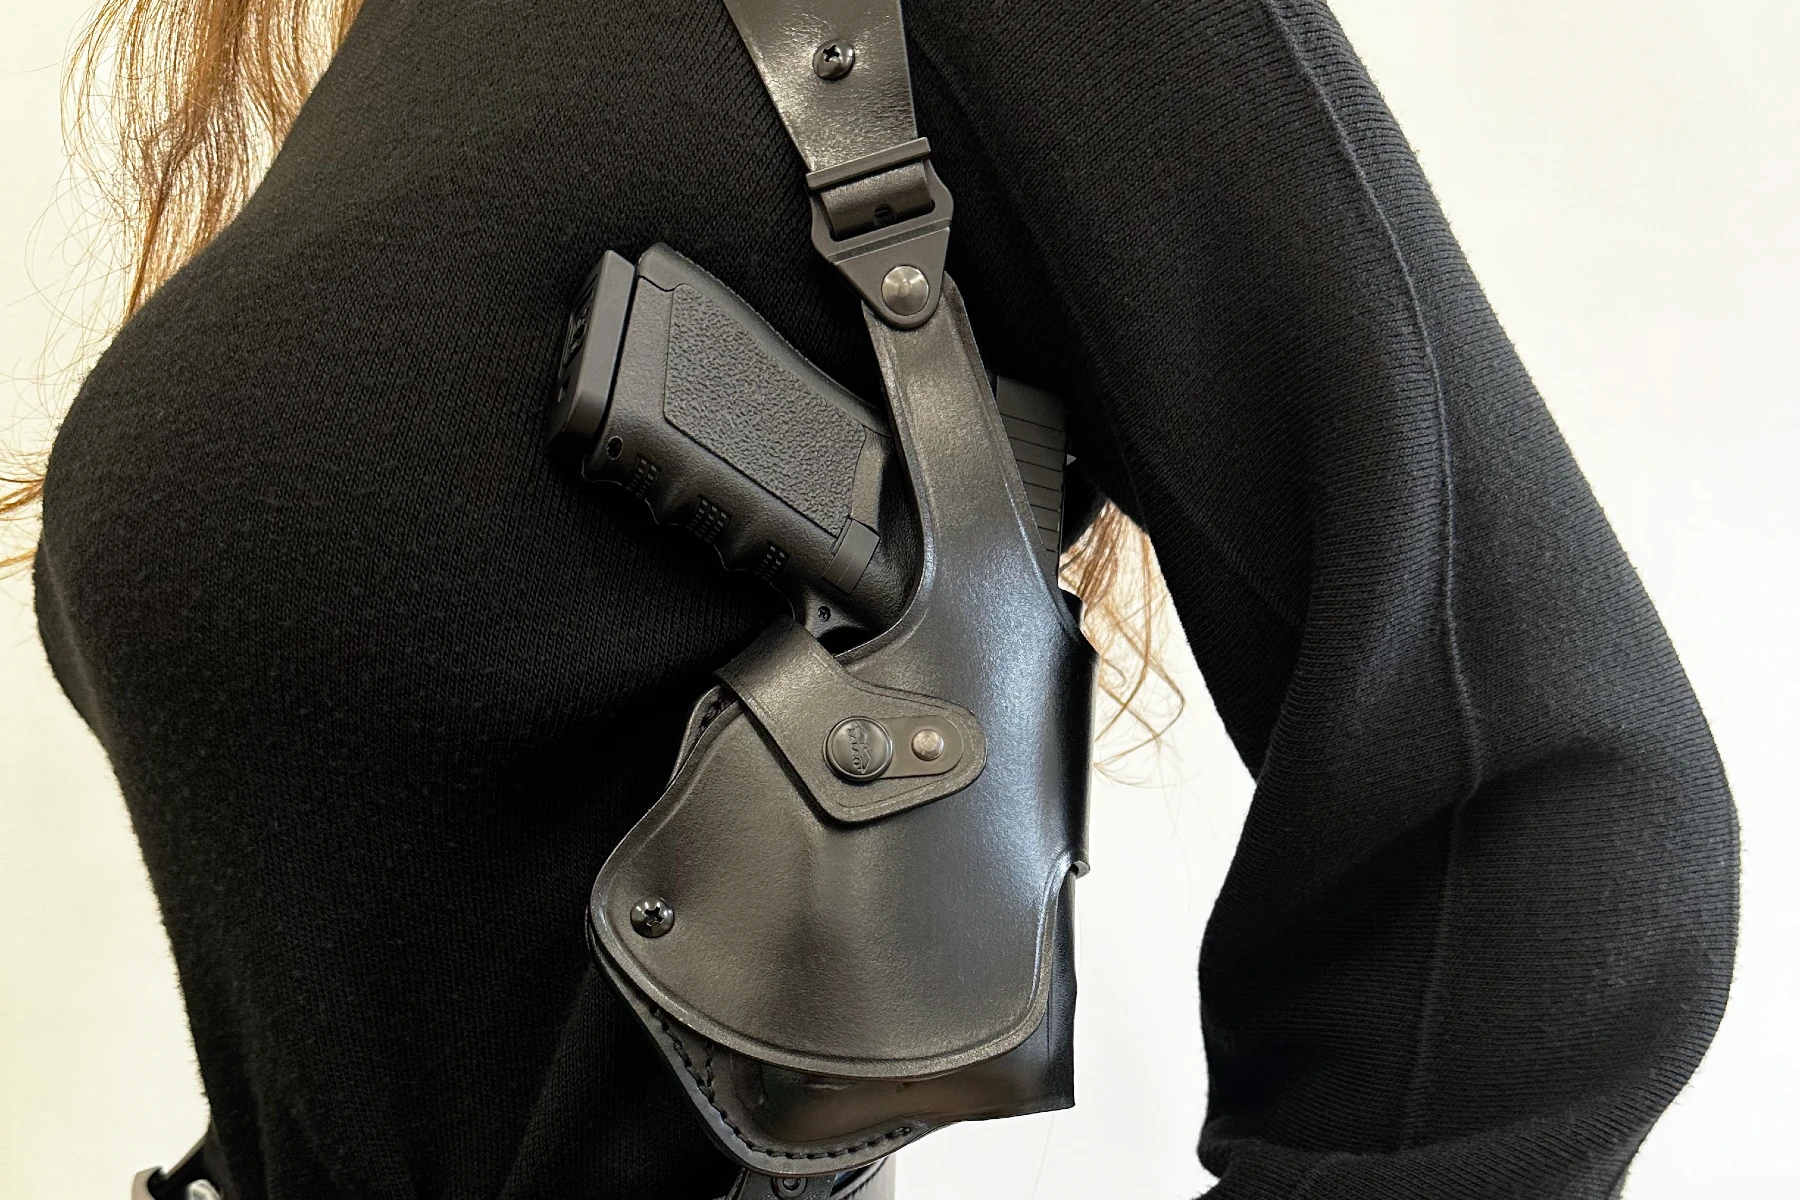 Light bearing women's shoulder holster